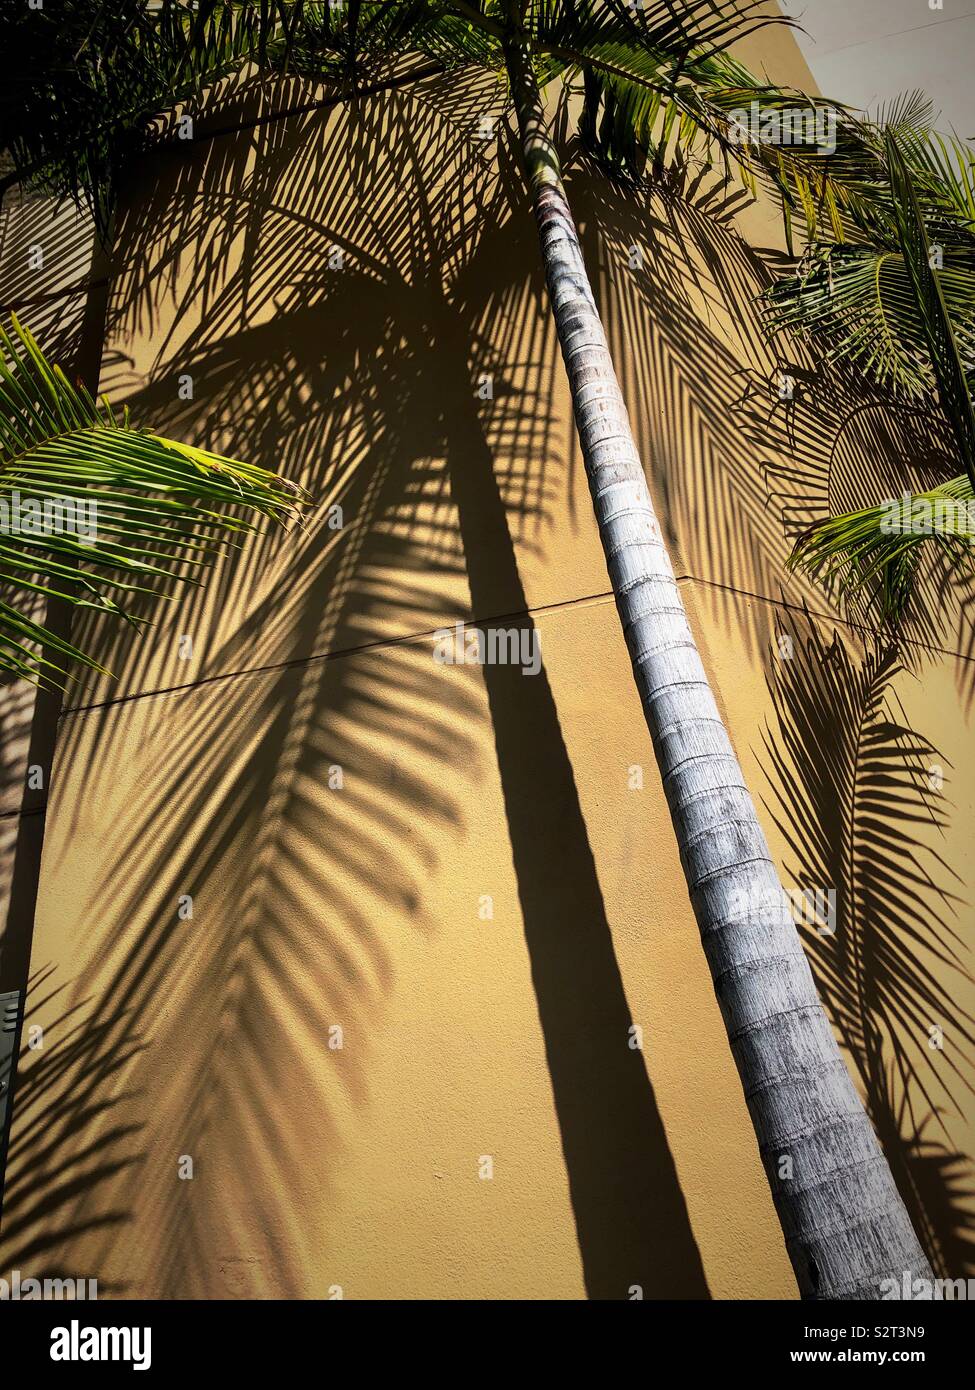 Palm tree e le ombre su una parete, Los Angeles California, Stati Uniti d'America Foto Stock